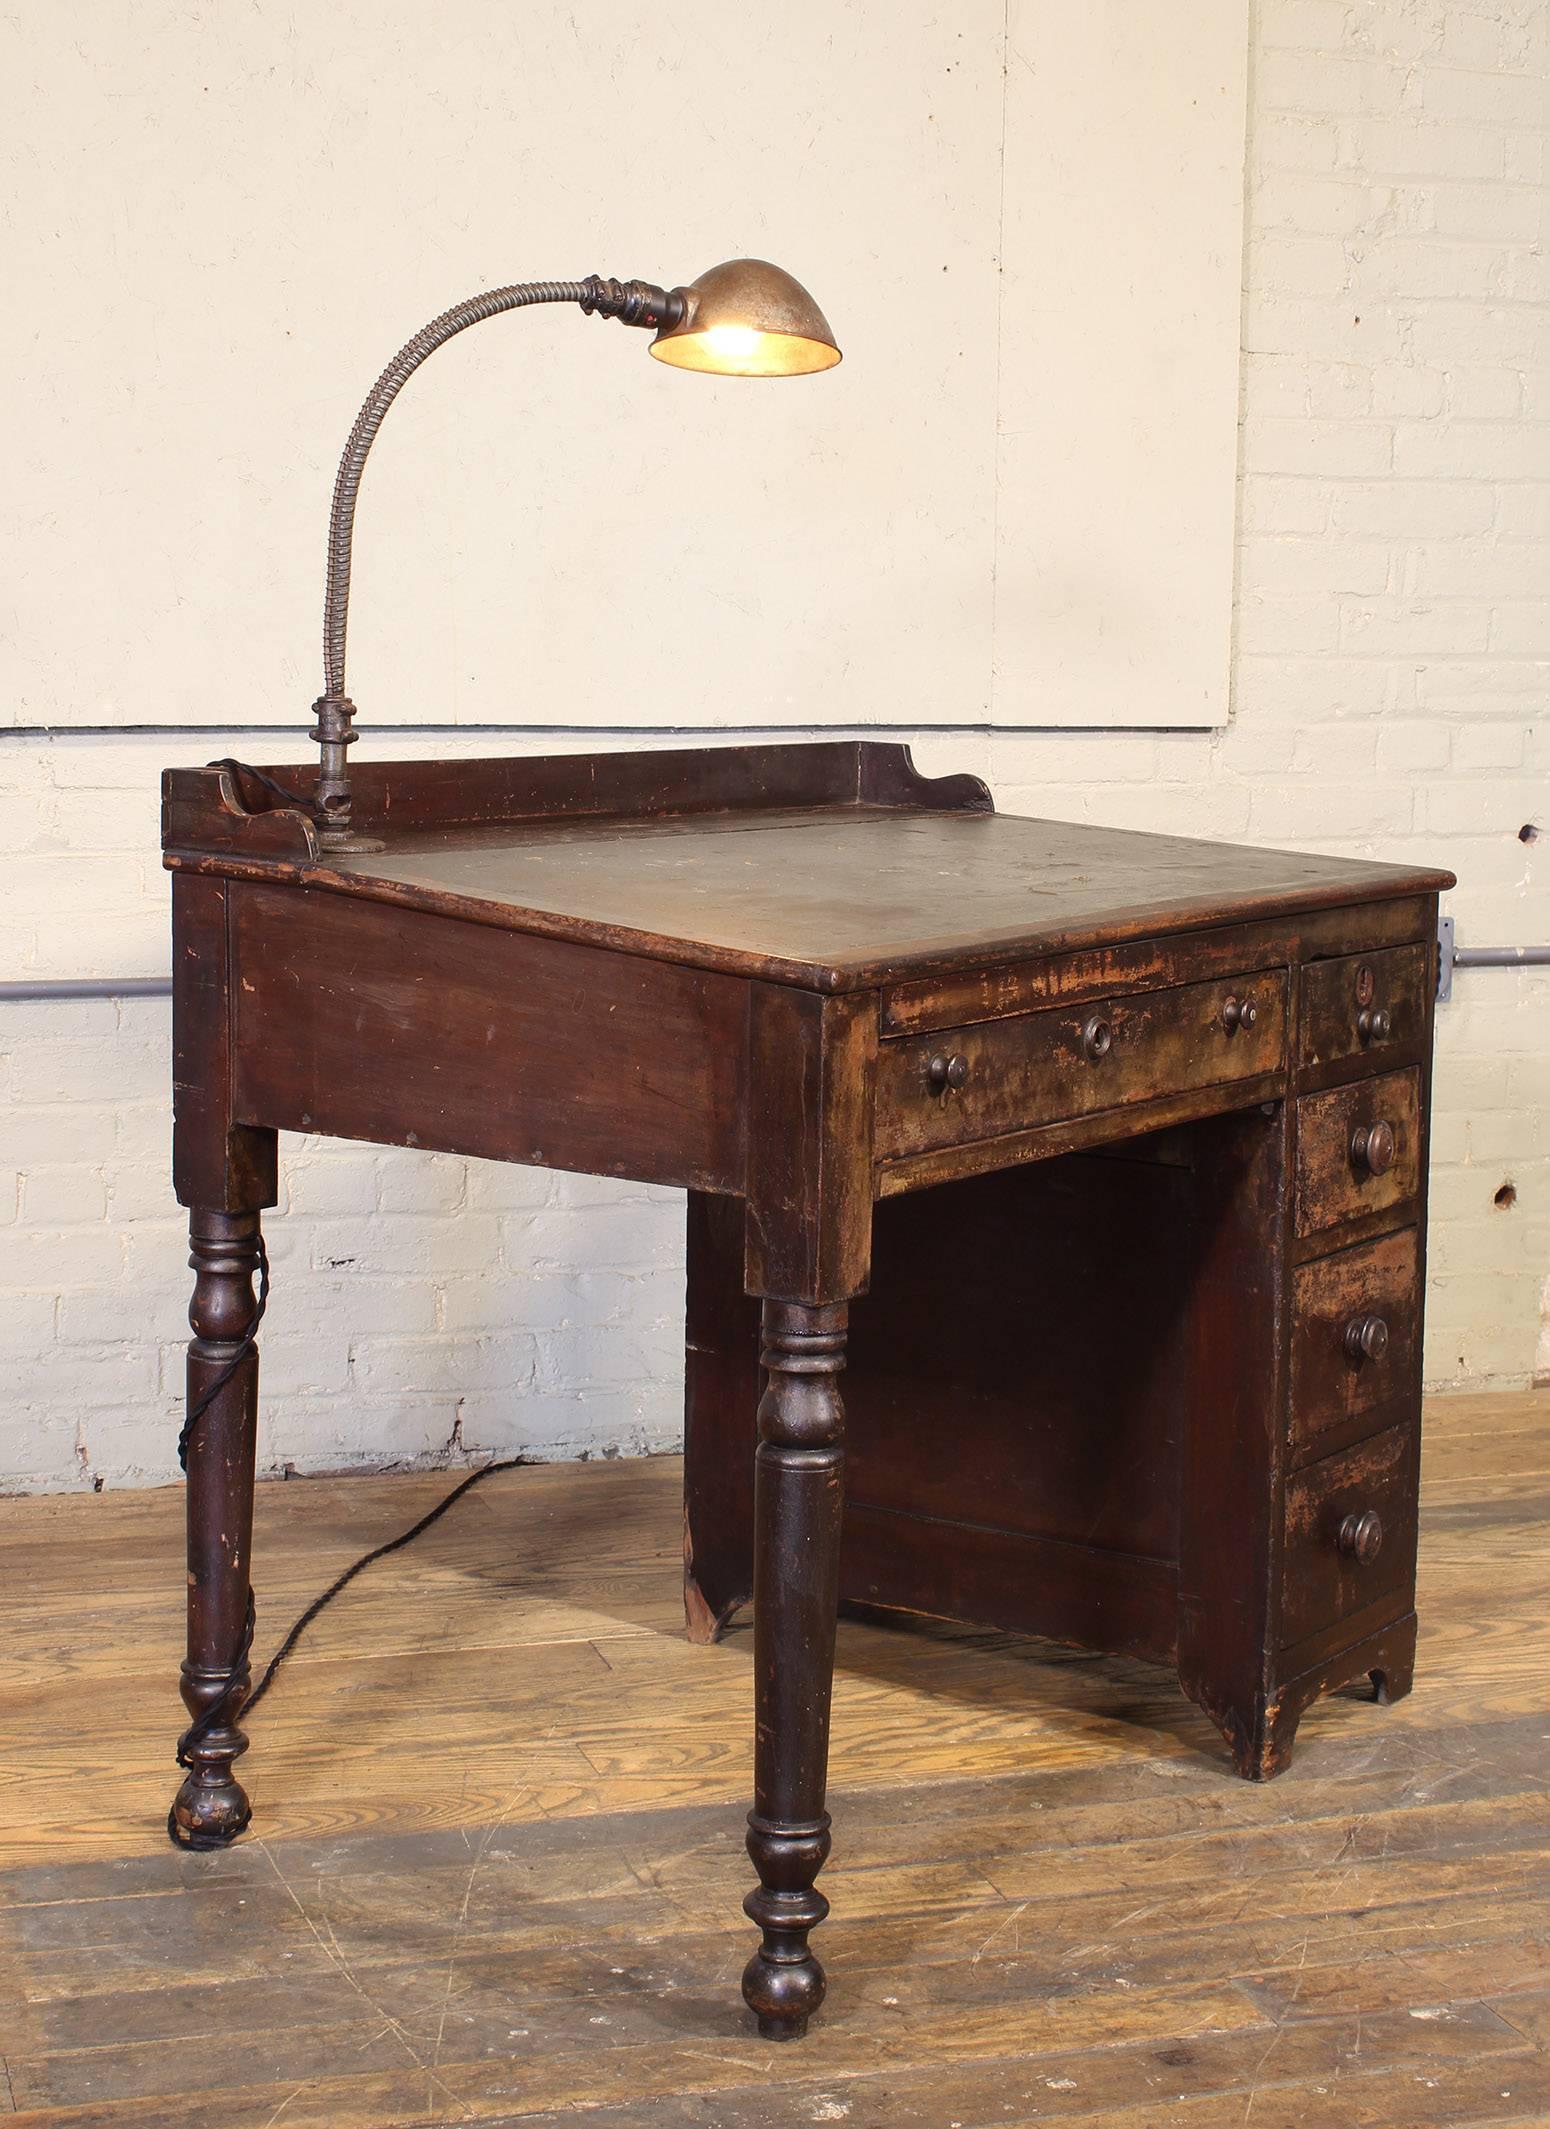 Vintage Industrial Clerk's Desk with Adjustable Task-Light (amerikanisch)